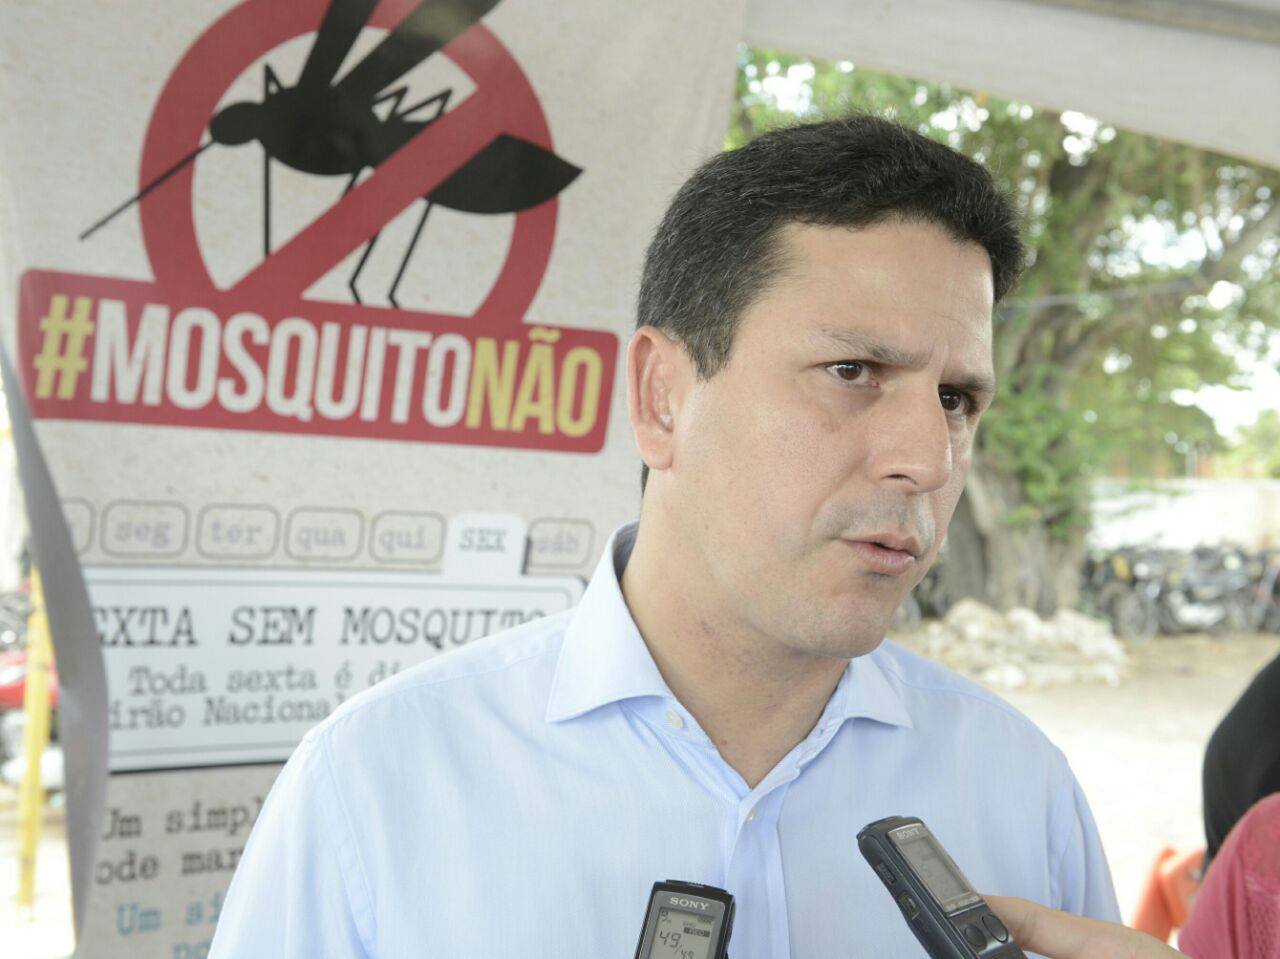 Bruno Araújo